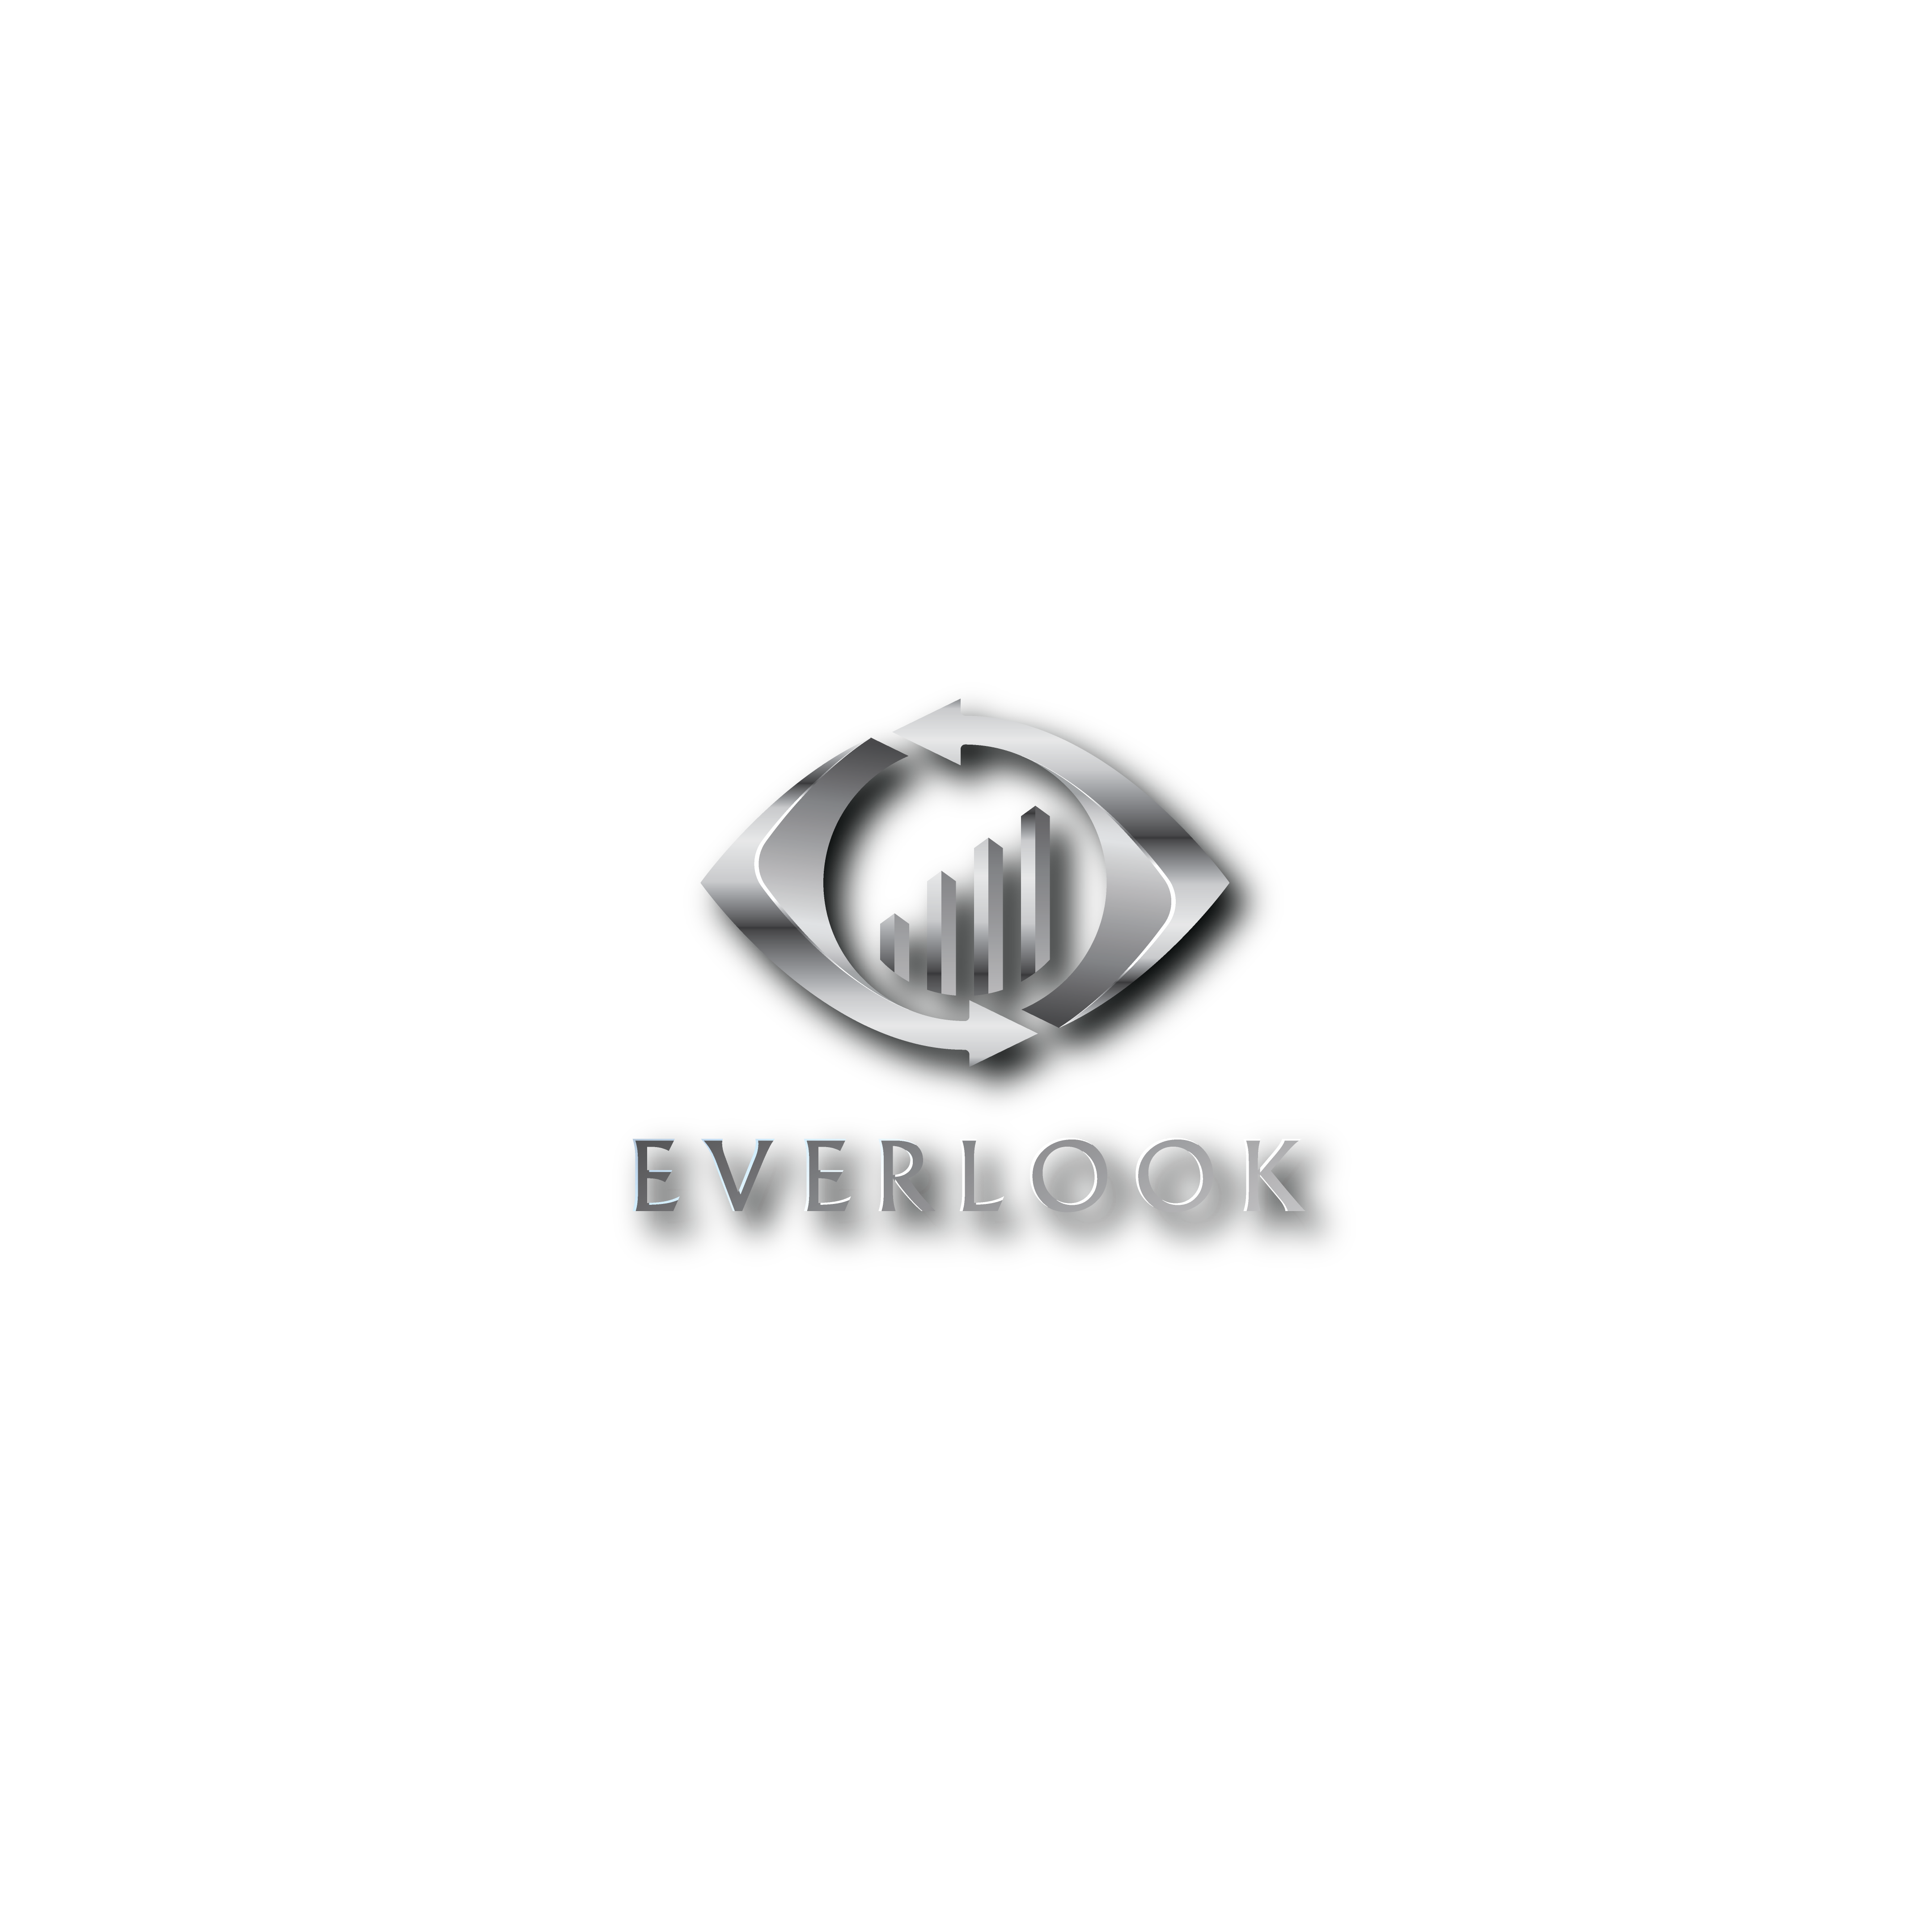 Everlook